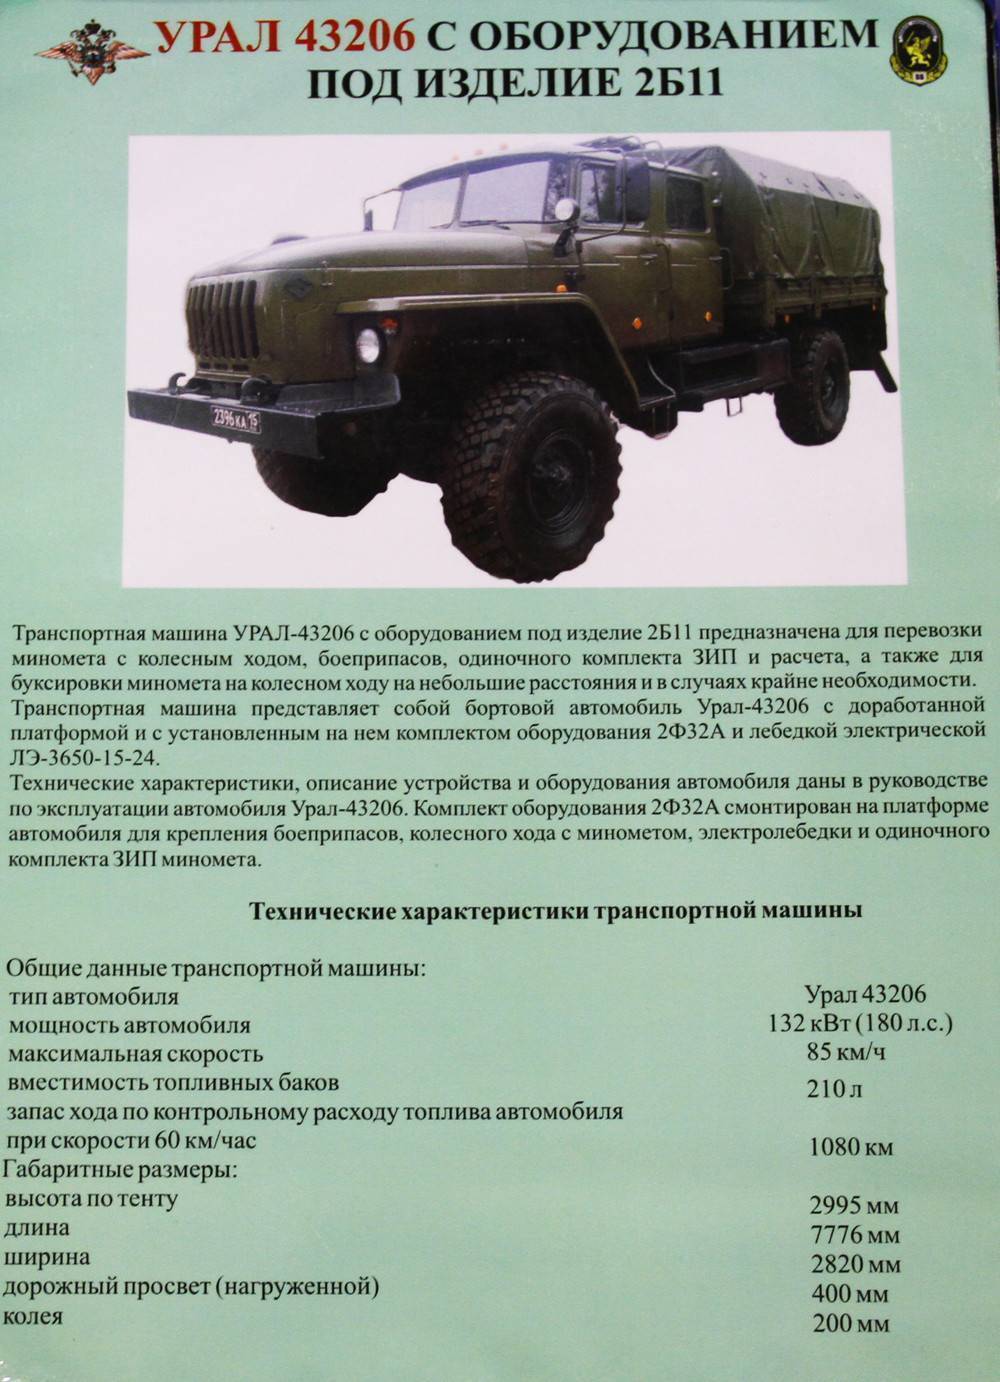 Урал-4320 - обзор, технические характеристики, фото модификации